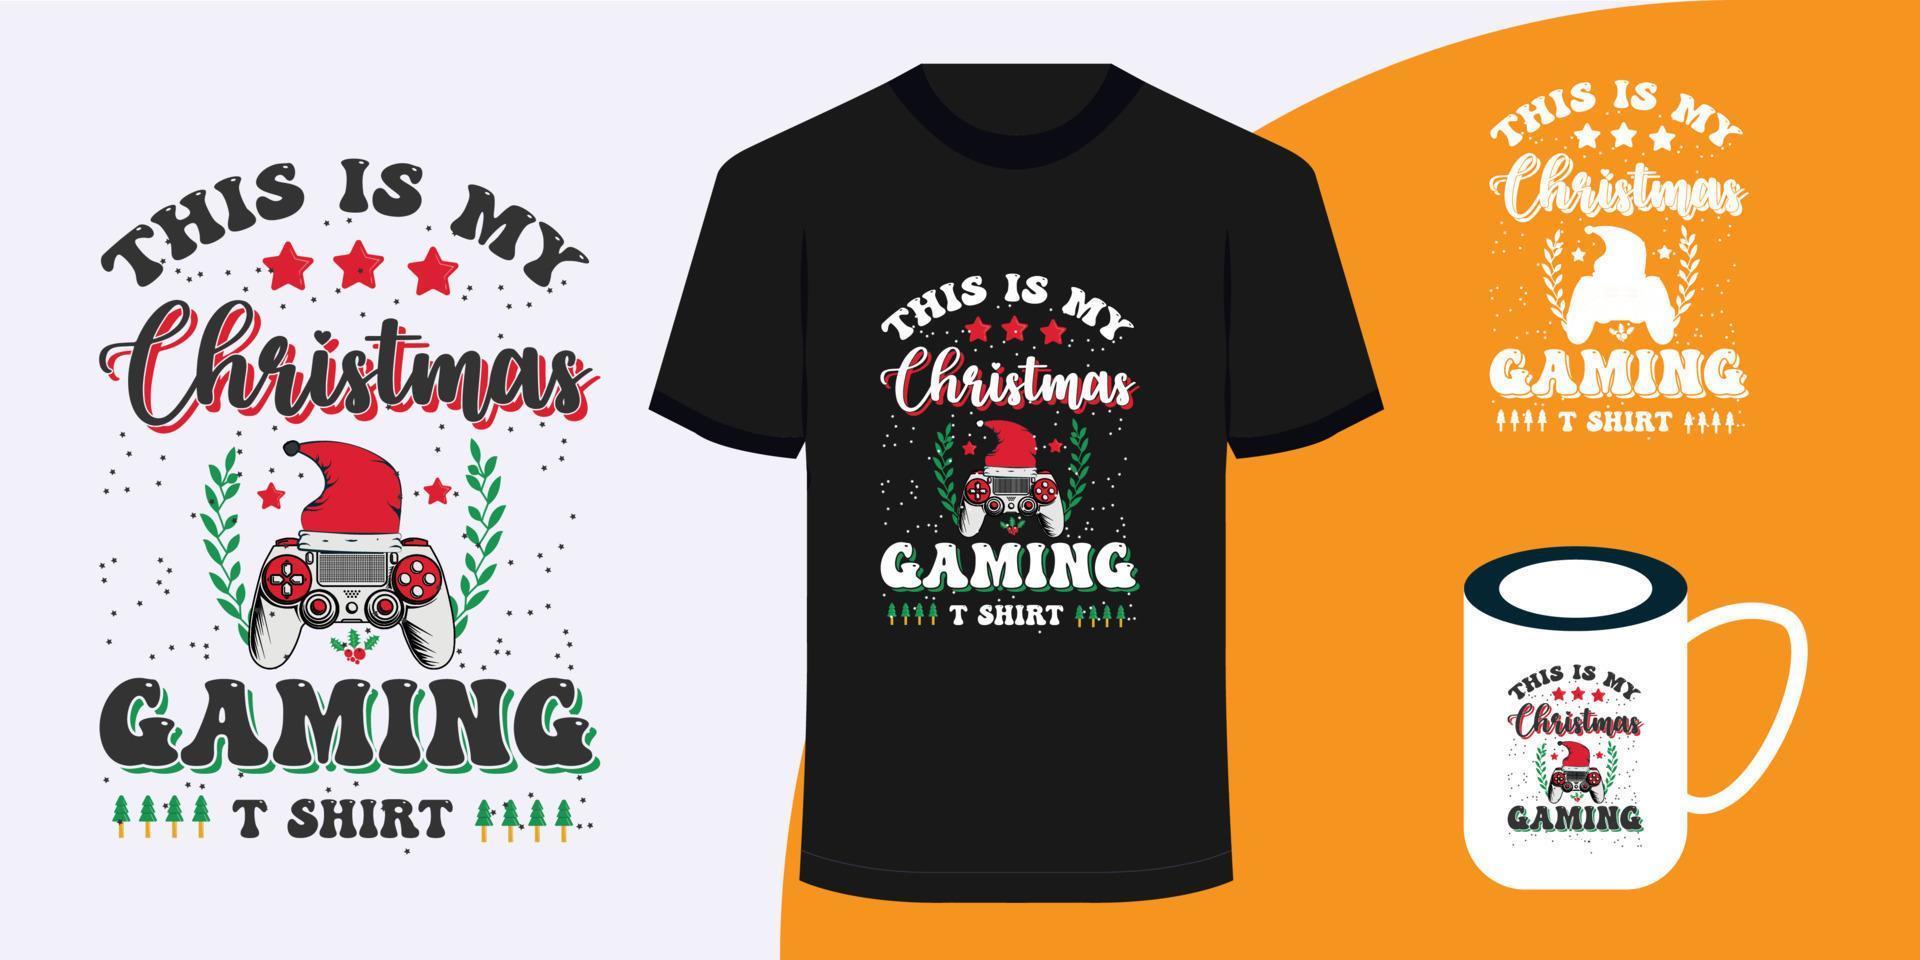 das ist mein weihnachtsspiel-t-shirt zitat weihnachtsplakat und t-shirt design vektor